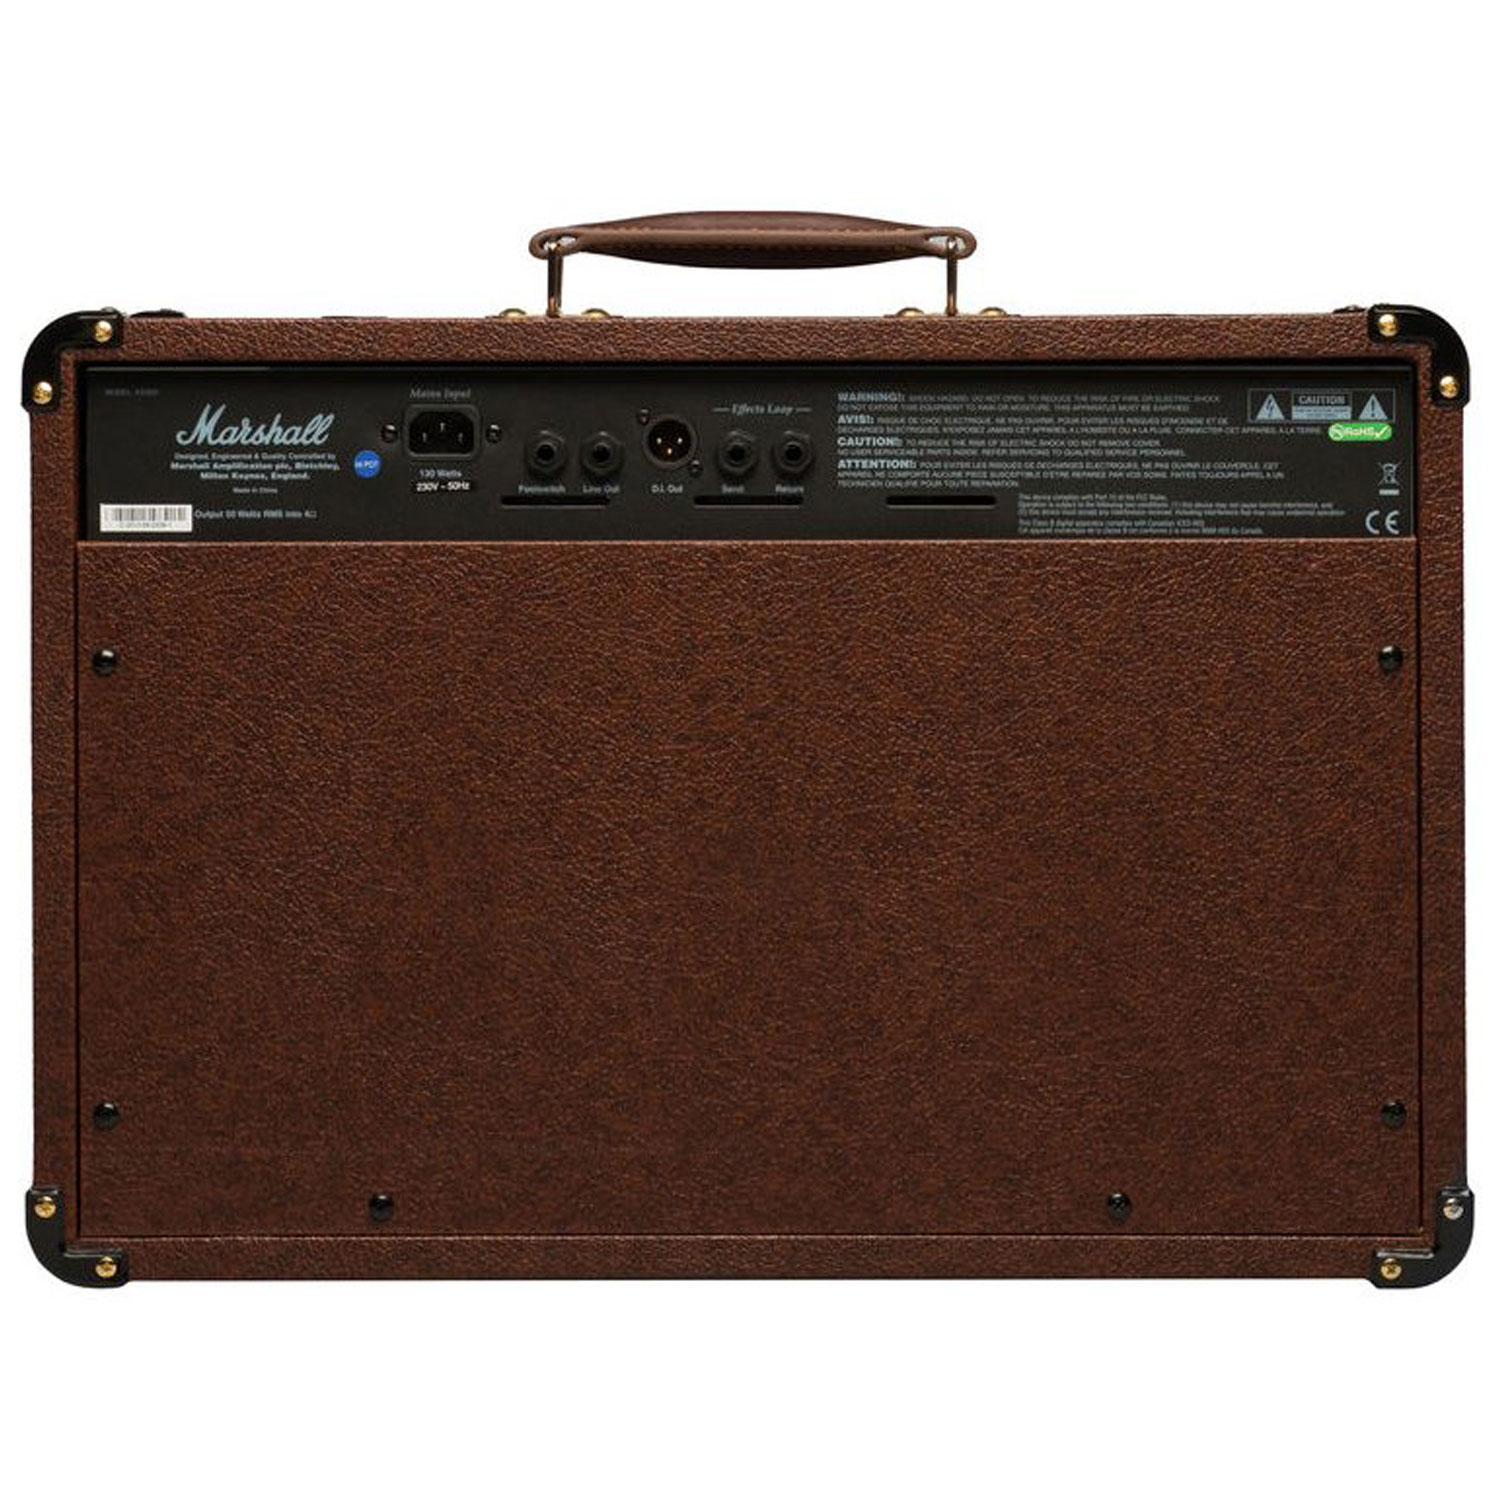  Marshall Altavoz amplificador (MG15GR) : Instrumentos Musicales